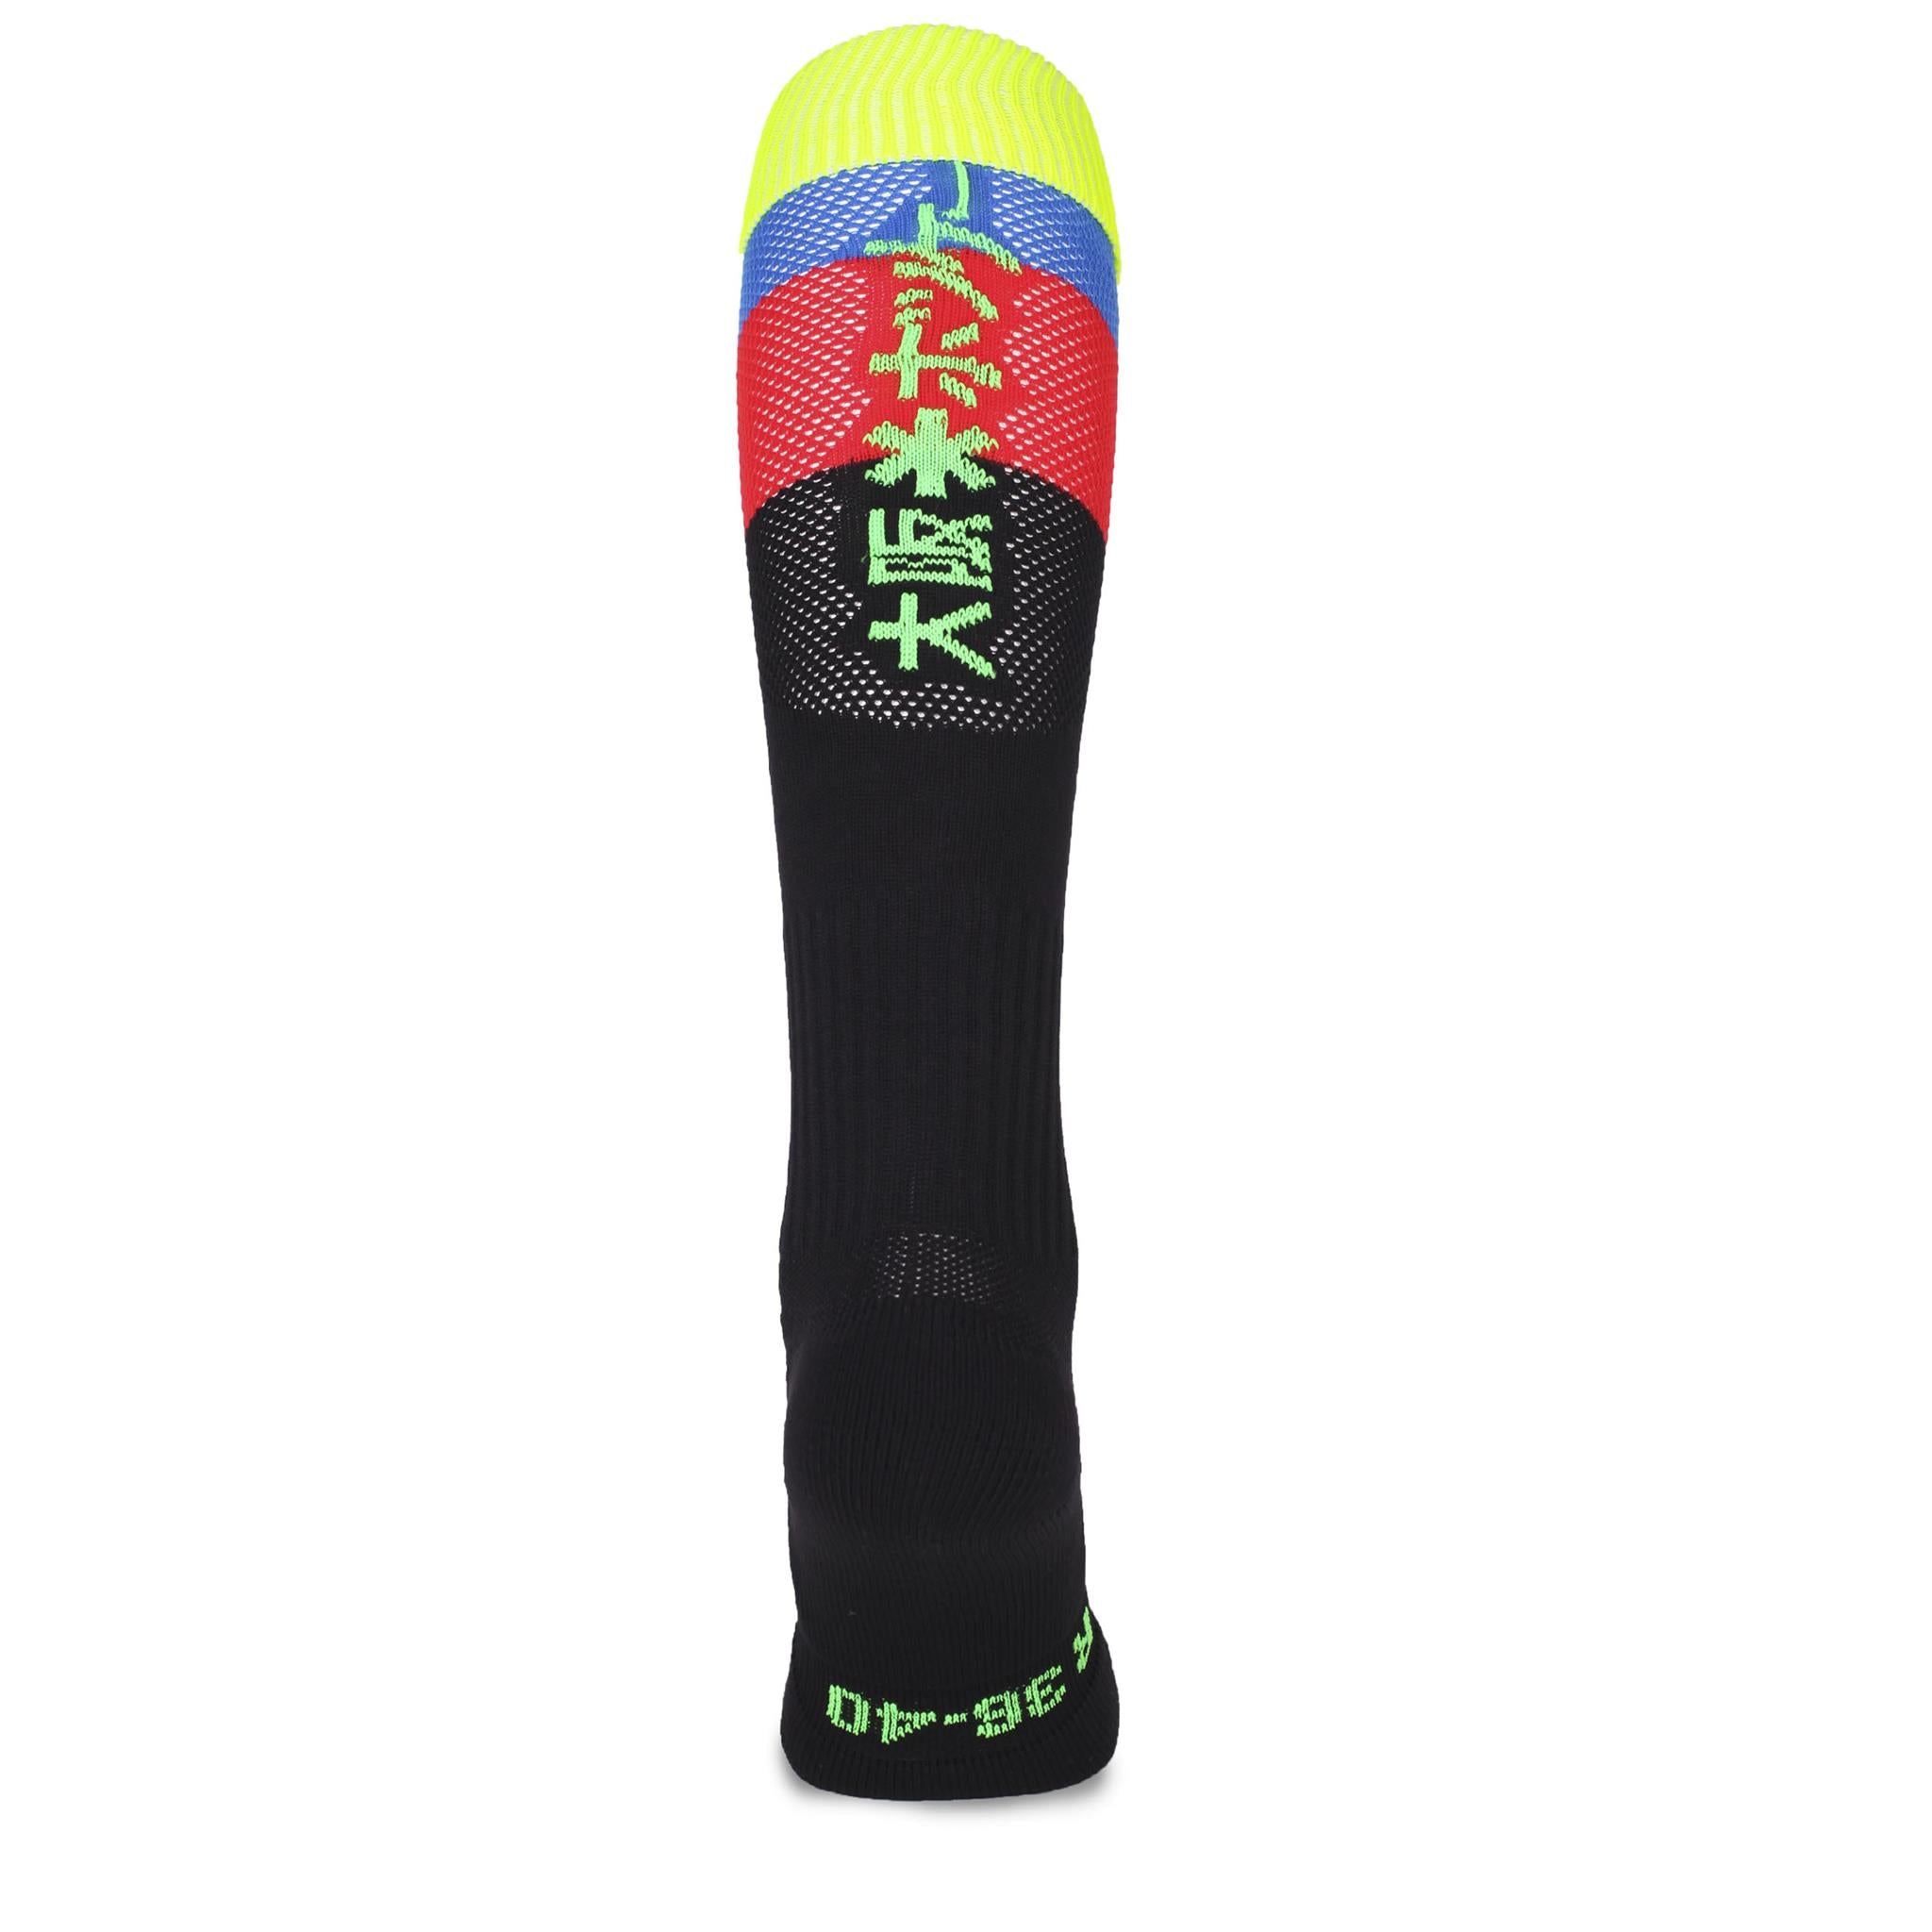 Osaka Socks Fluo